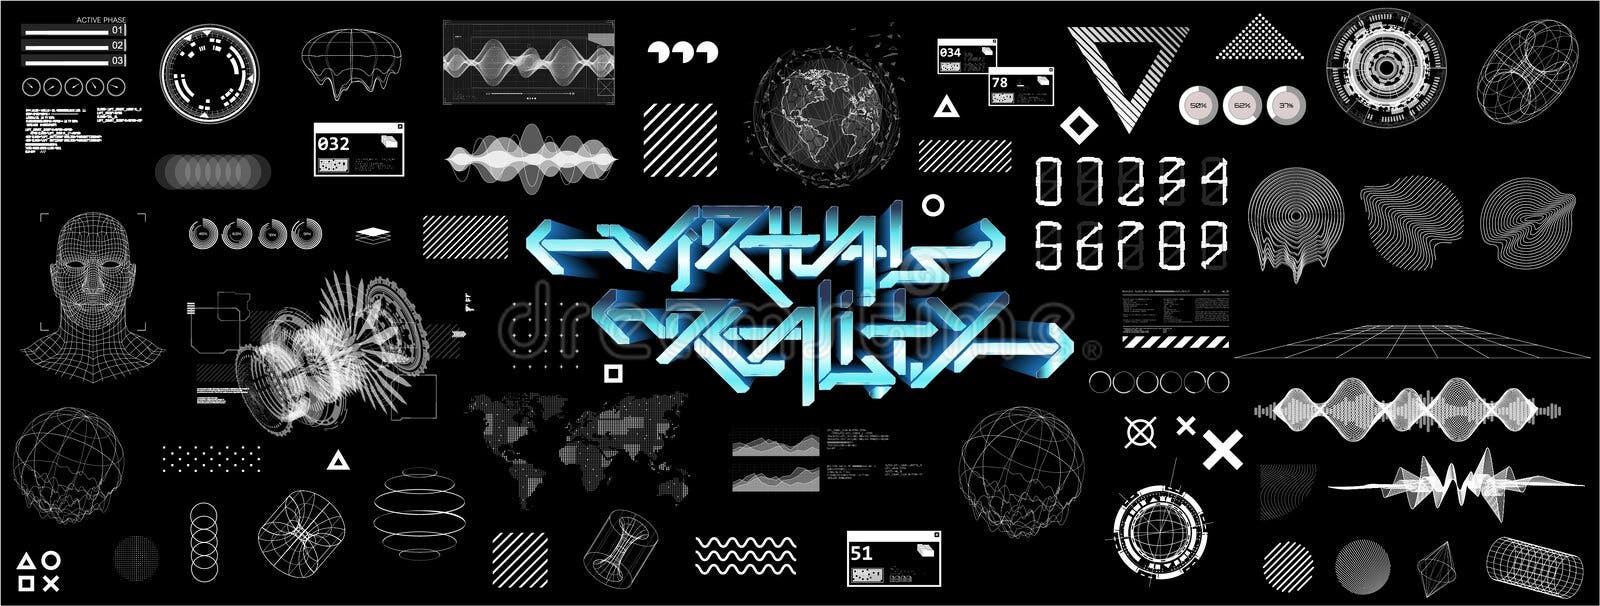 Cyberpunk industrial abstract future wallpaper conceito futurista